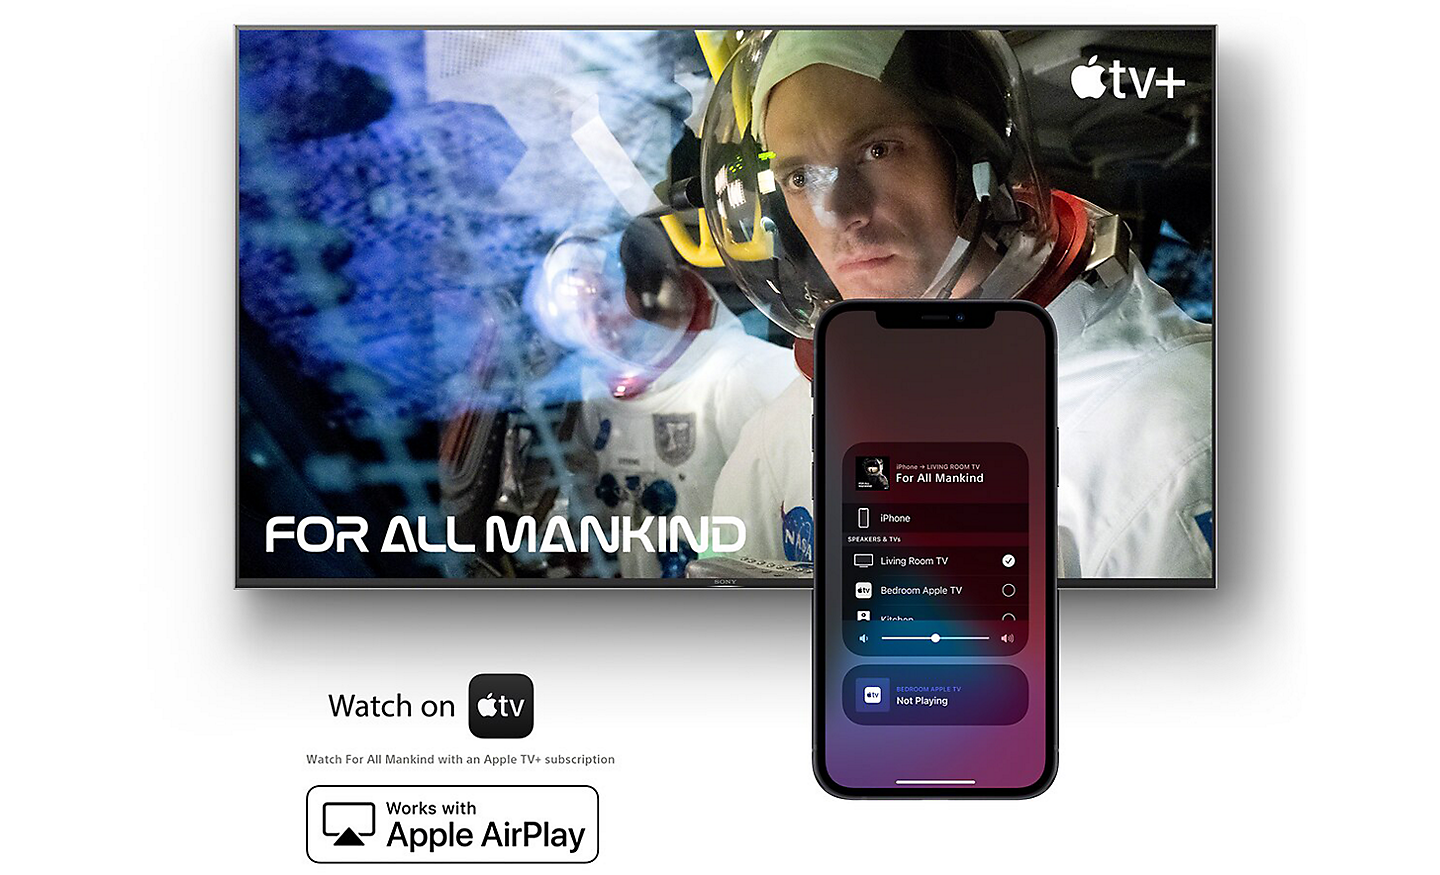 Écran affichant la série « For All Mankind » sur Apple TV avec un smartphone devant, et les logos Watch on Apple TV et Works with Apple AirPlay en dessous